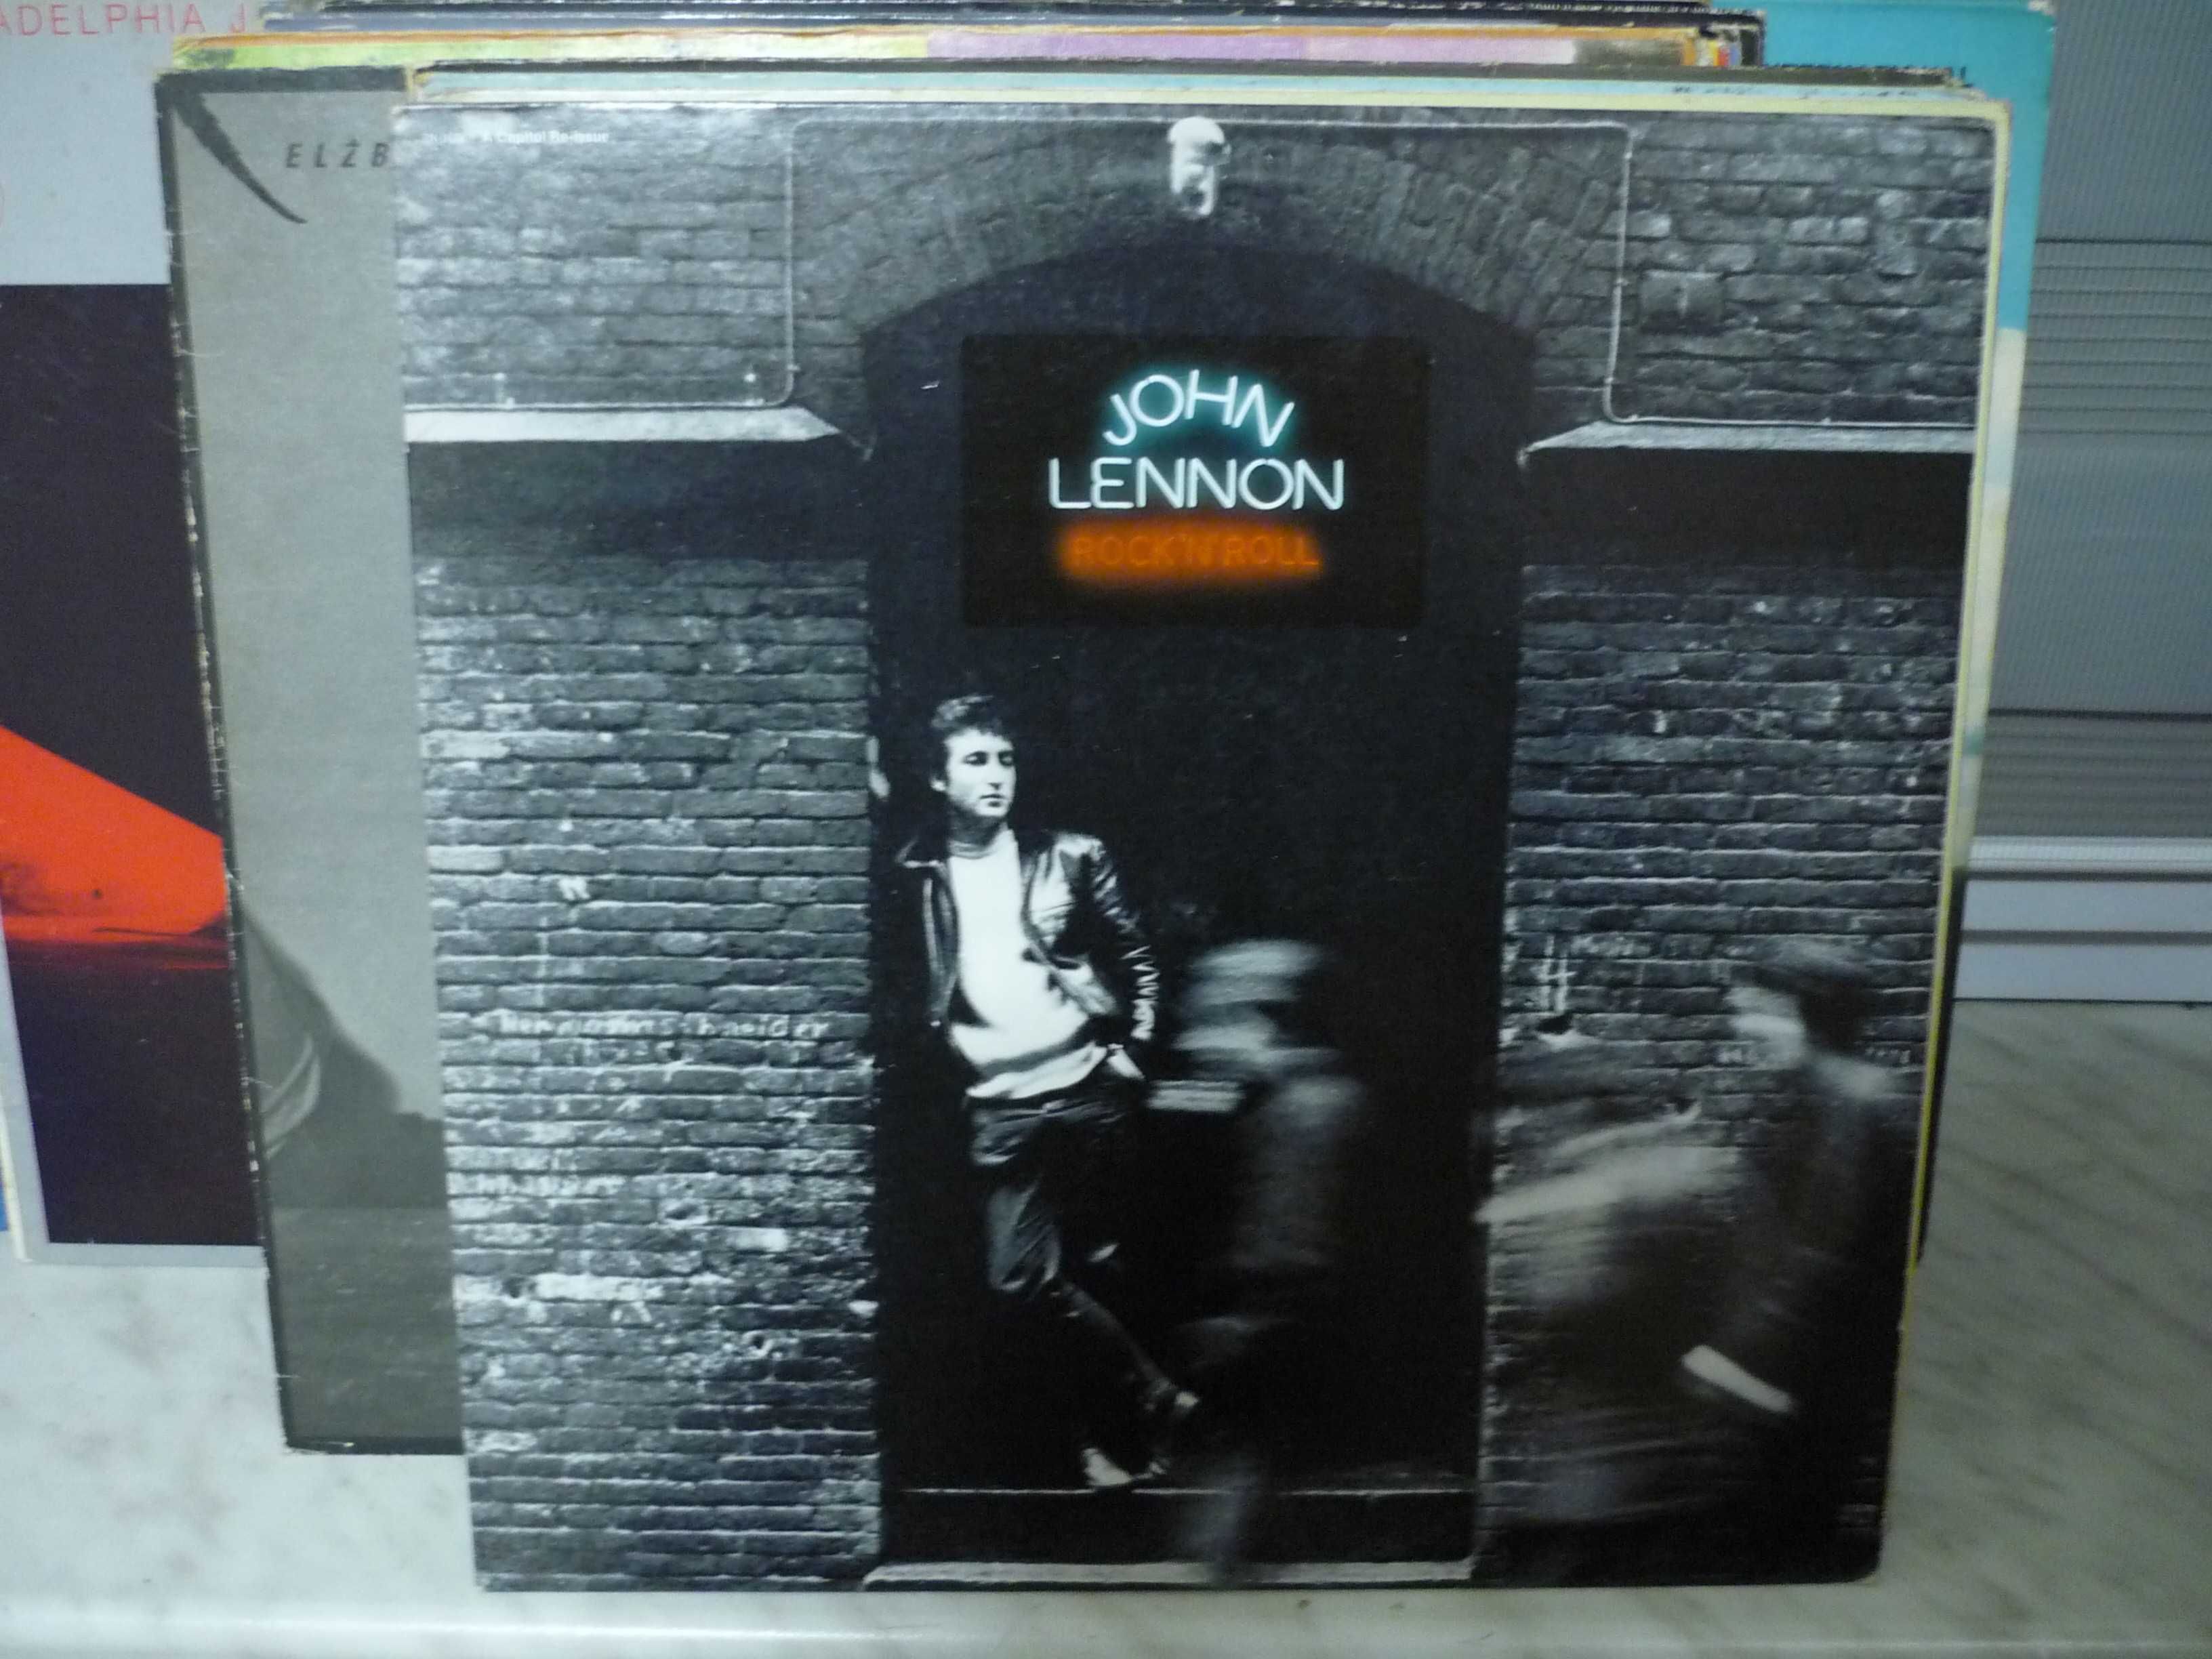 John Lennon Rock'n'Roll , vinyl.